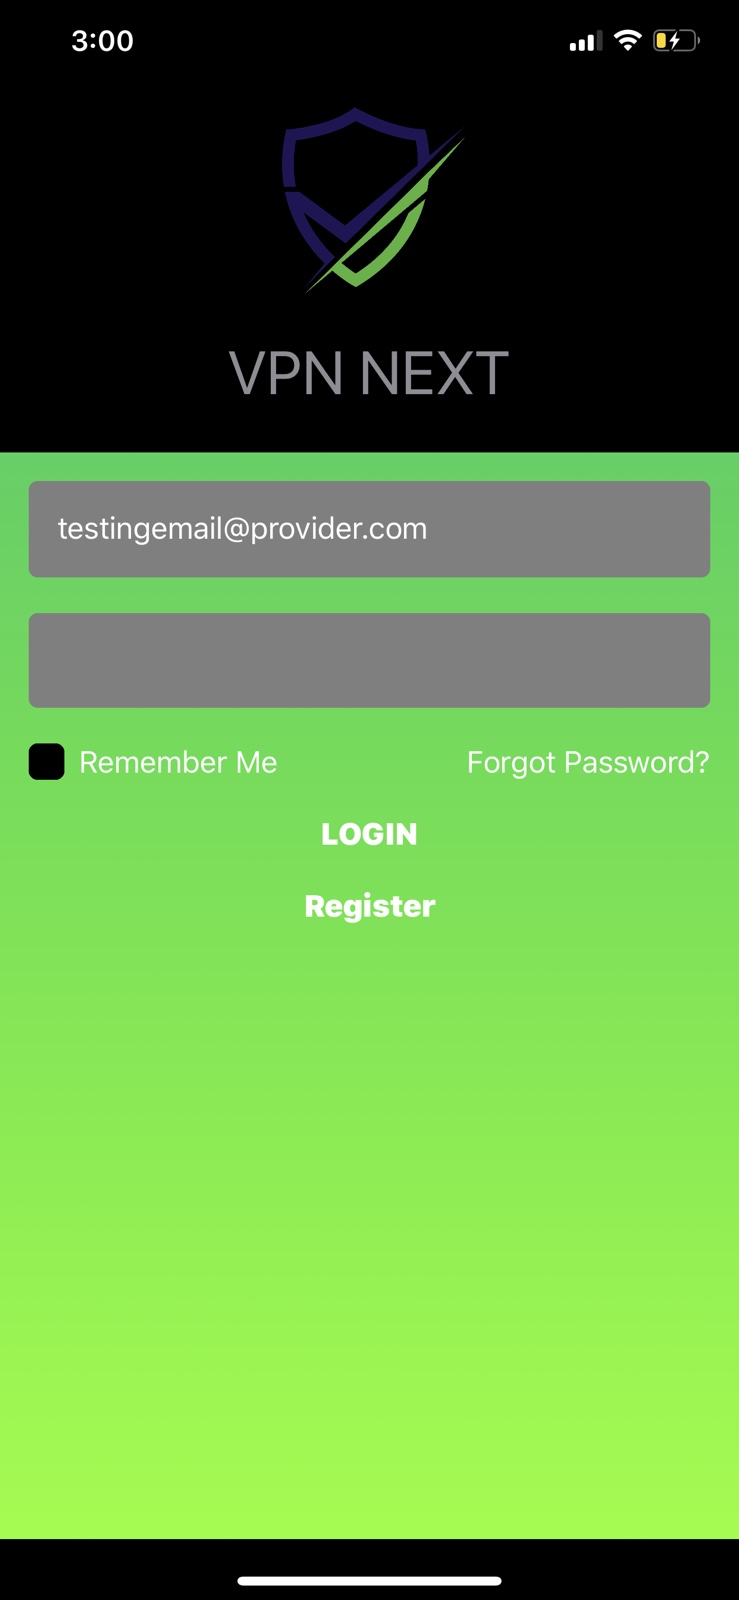 VpnNext app UI (iOS): VPN Registration.